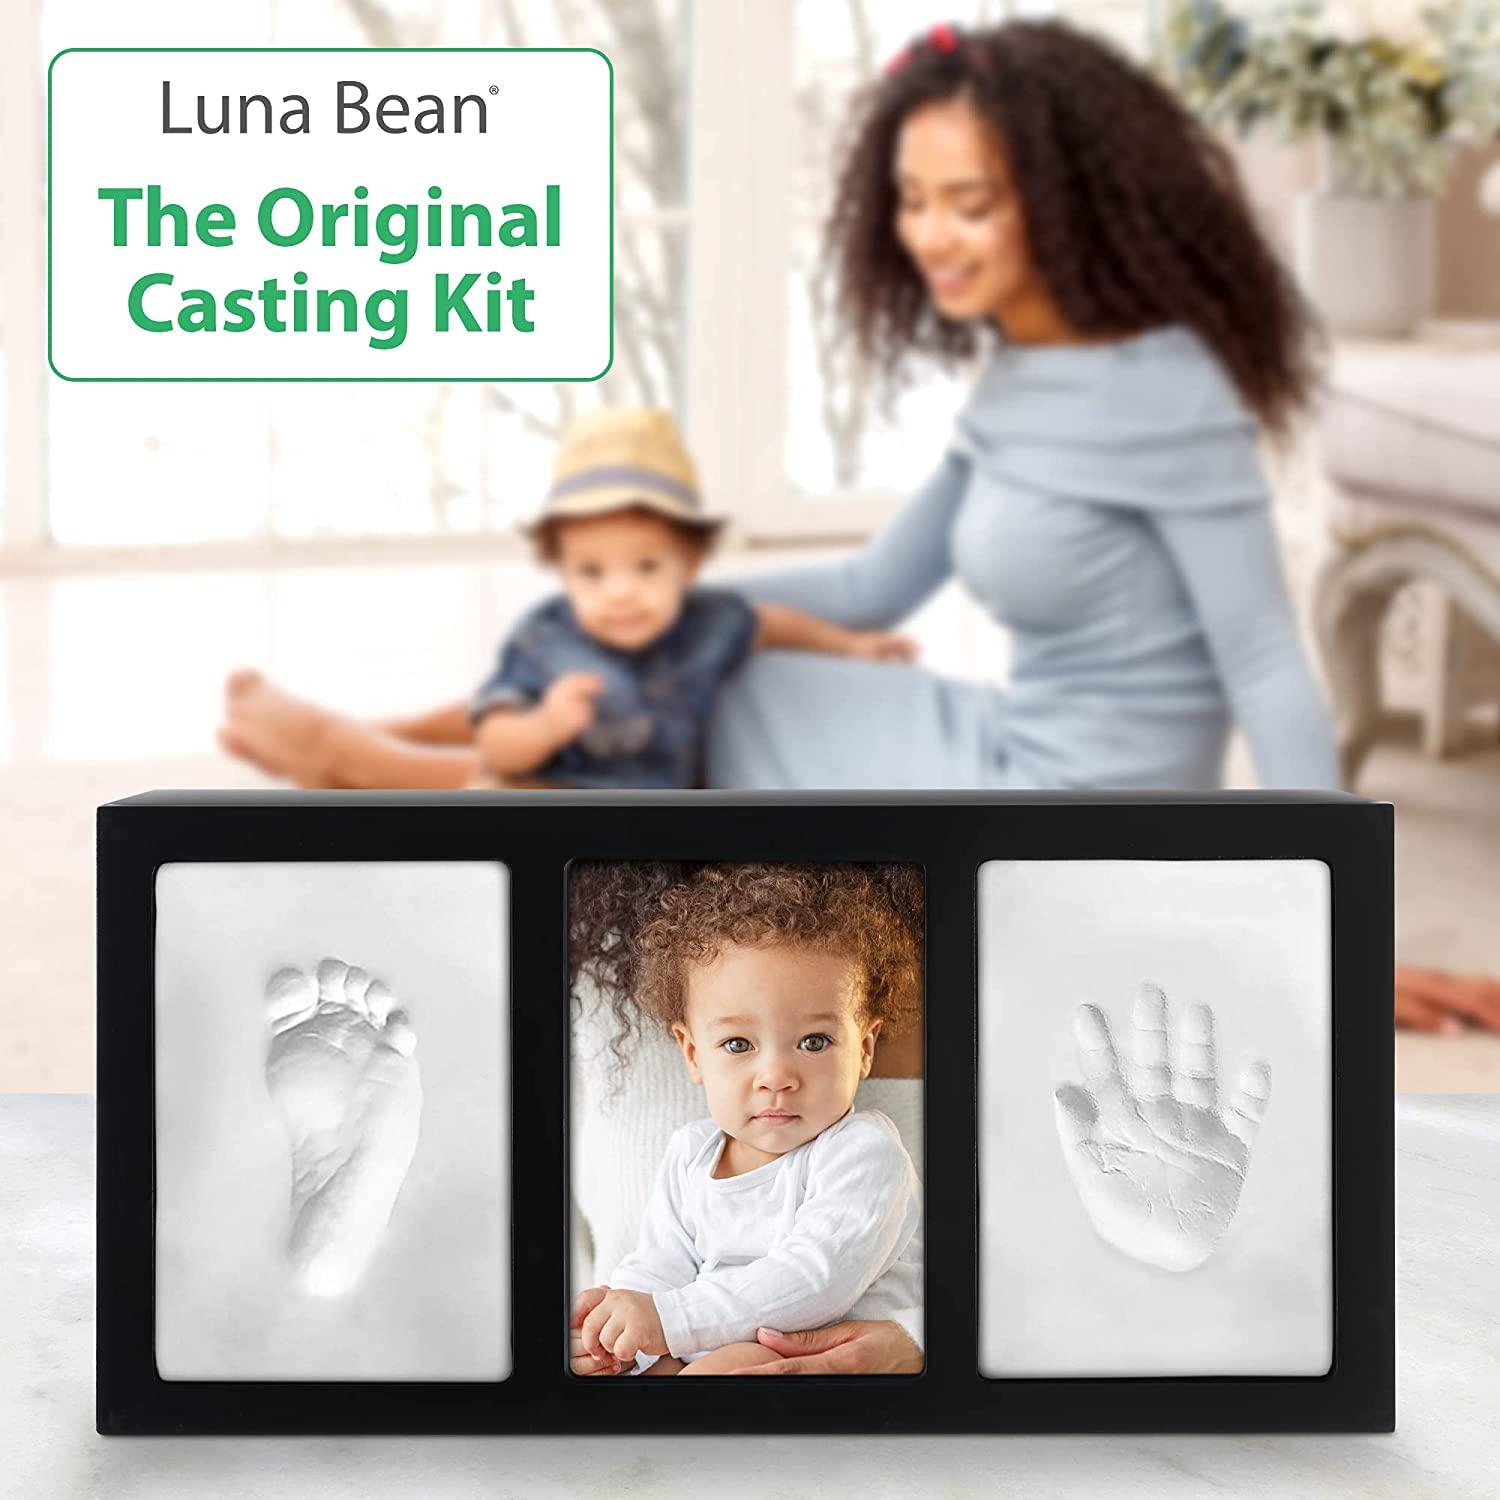 Baby Hand and Footprint Kit - Baby Footprint Kit, Baby Keepsake